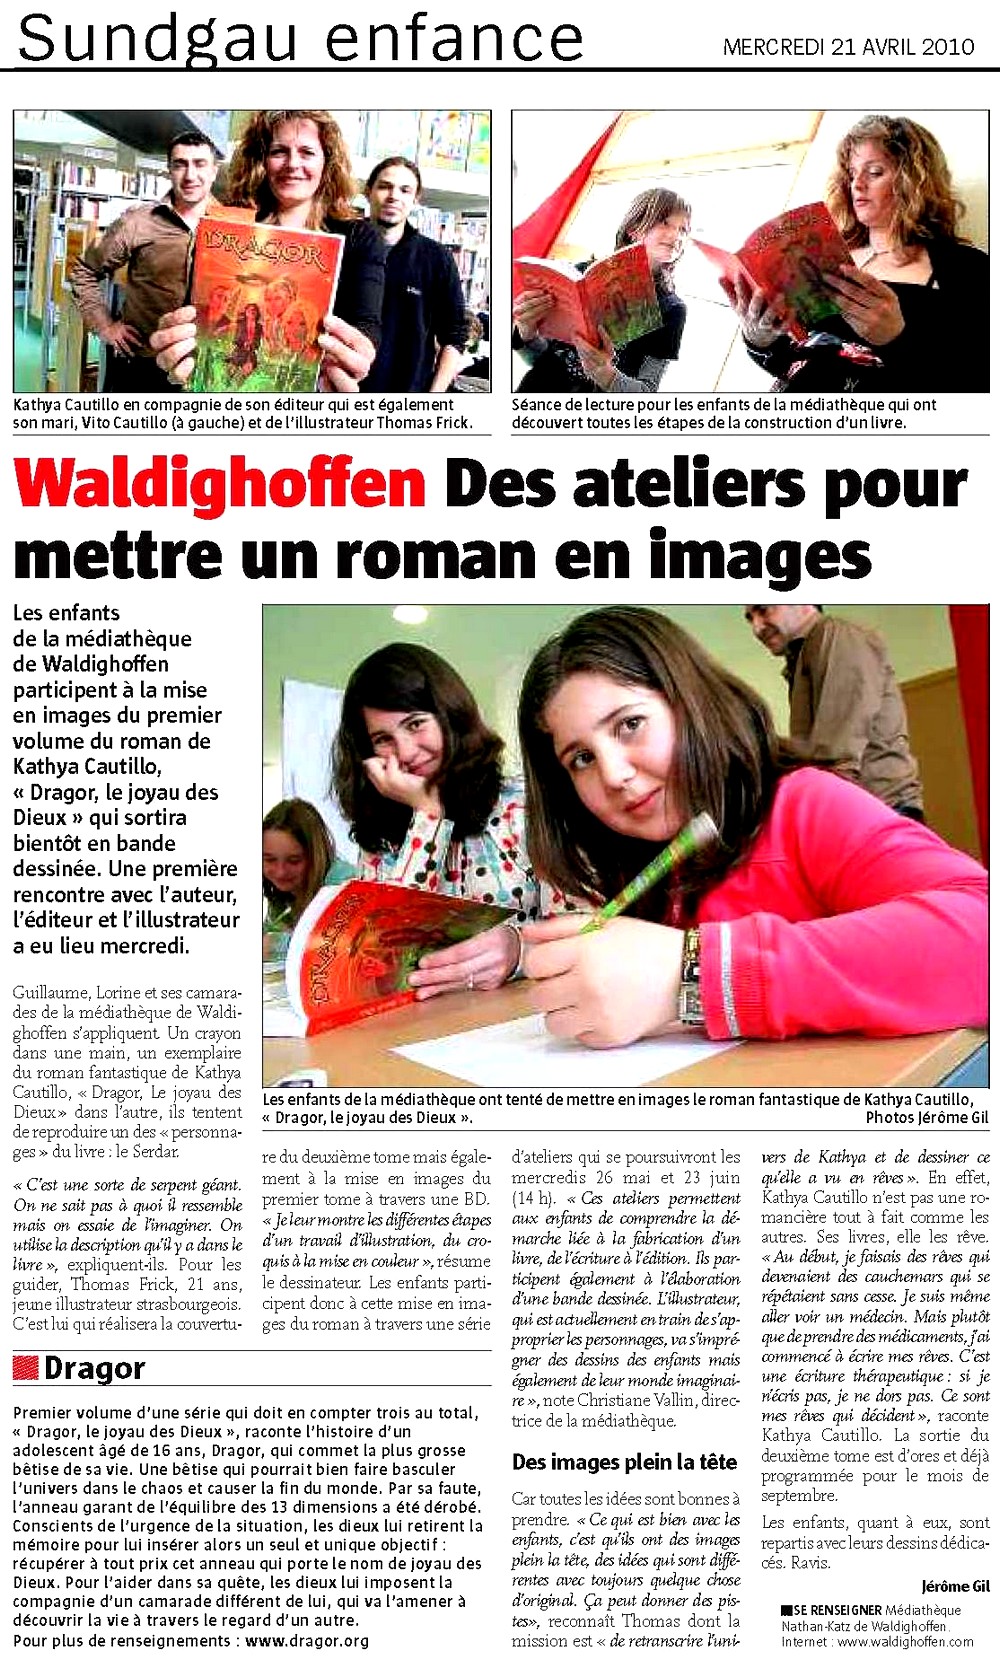 Atelier Kathya CAUTILLO dans l'Alsace le 21 04 10 article principal